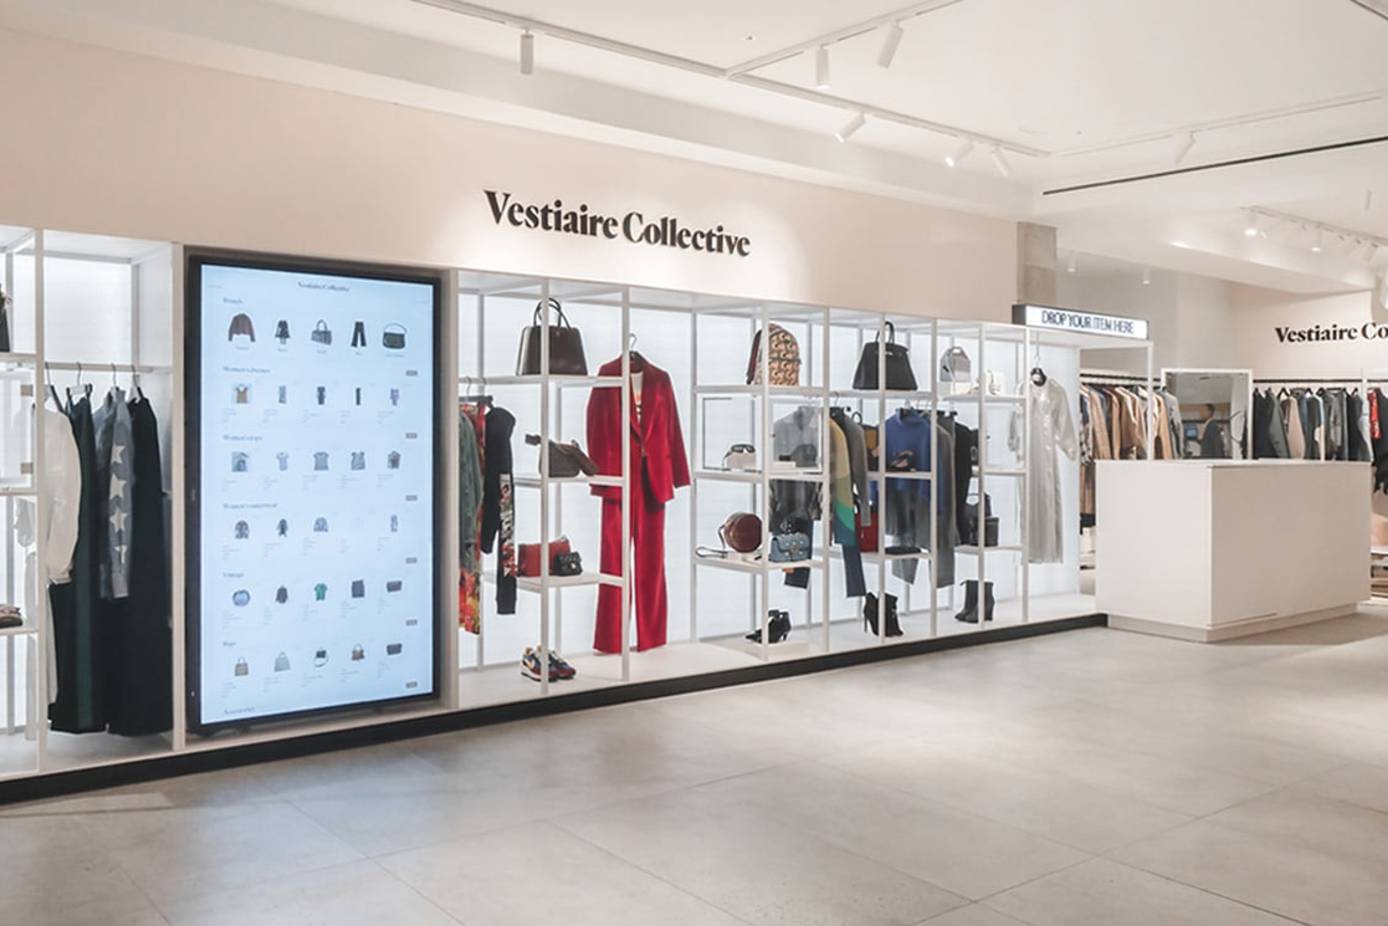 Vestiaire Collective: compra y vende moda de marca de segunda mano.